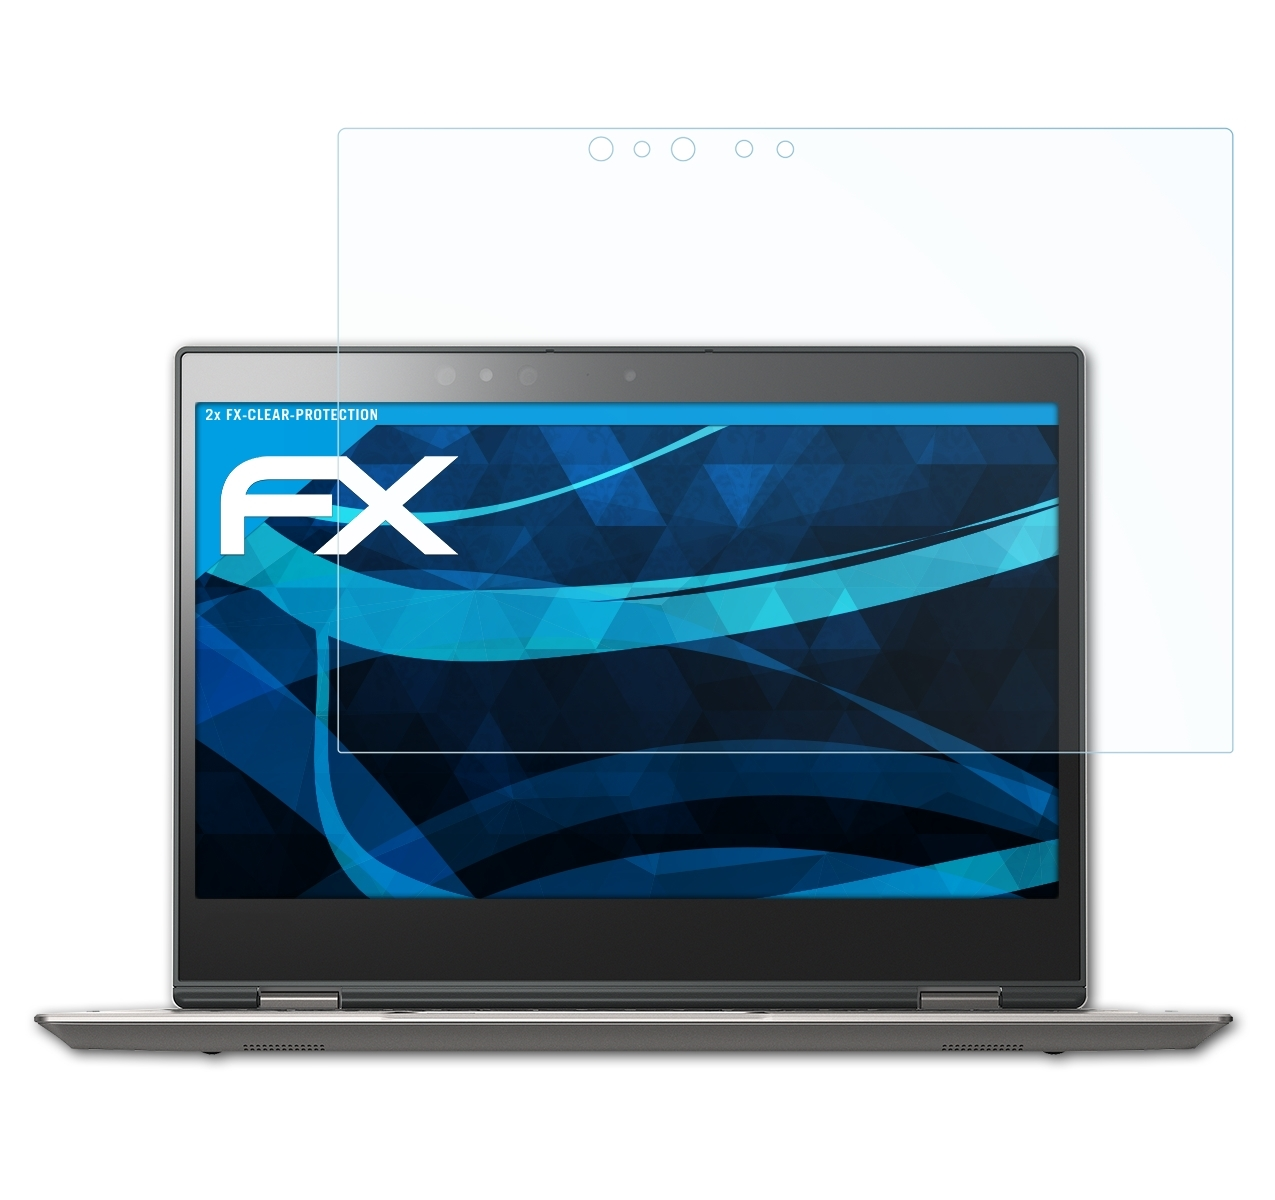 ATFOLIX Portege 2x Toshiba FX-Clear Displayschutz(für X20W)